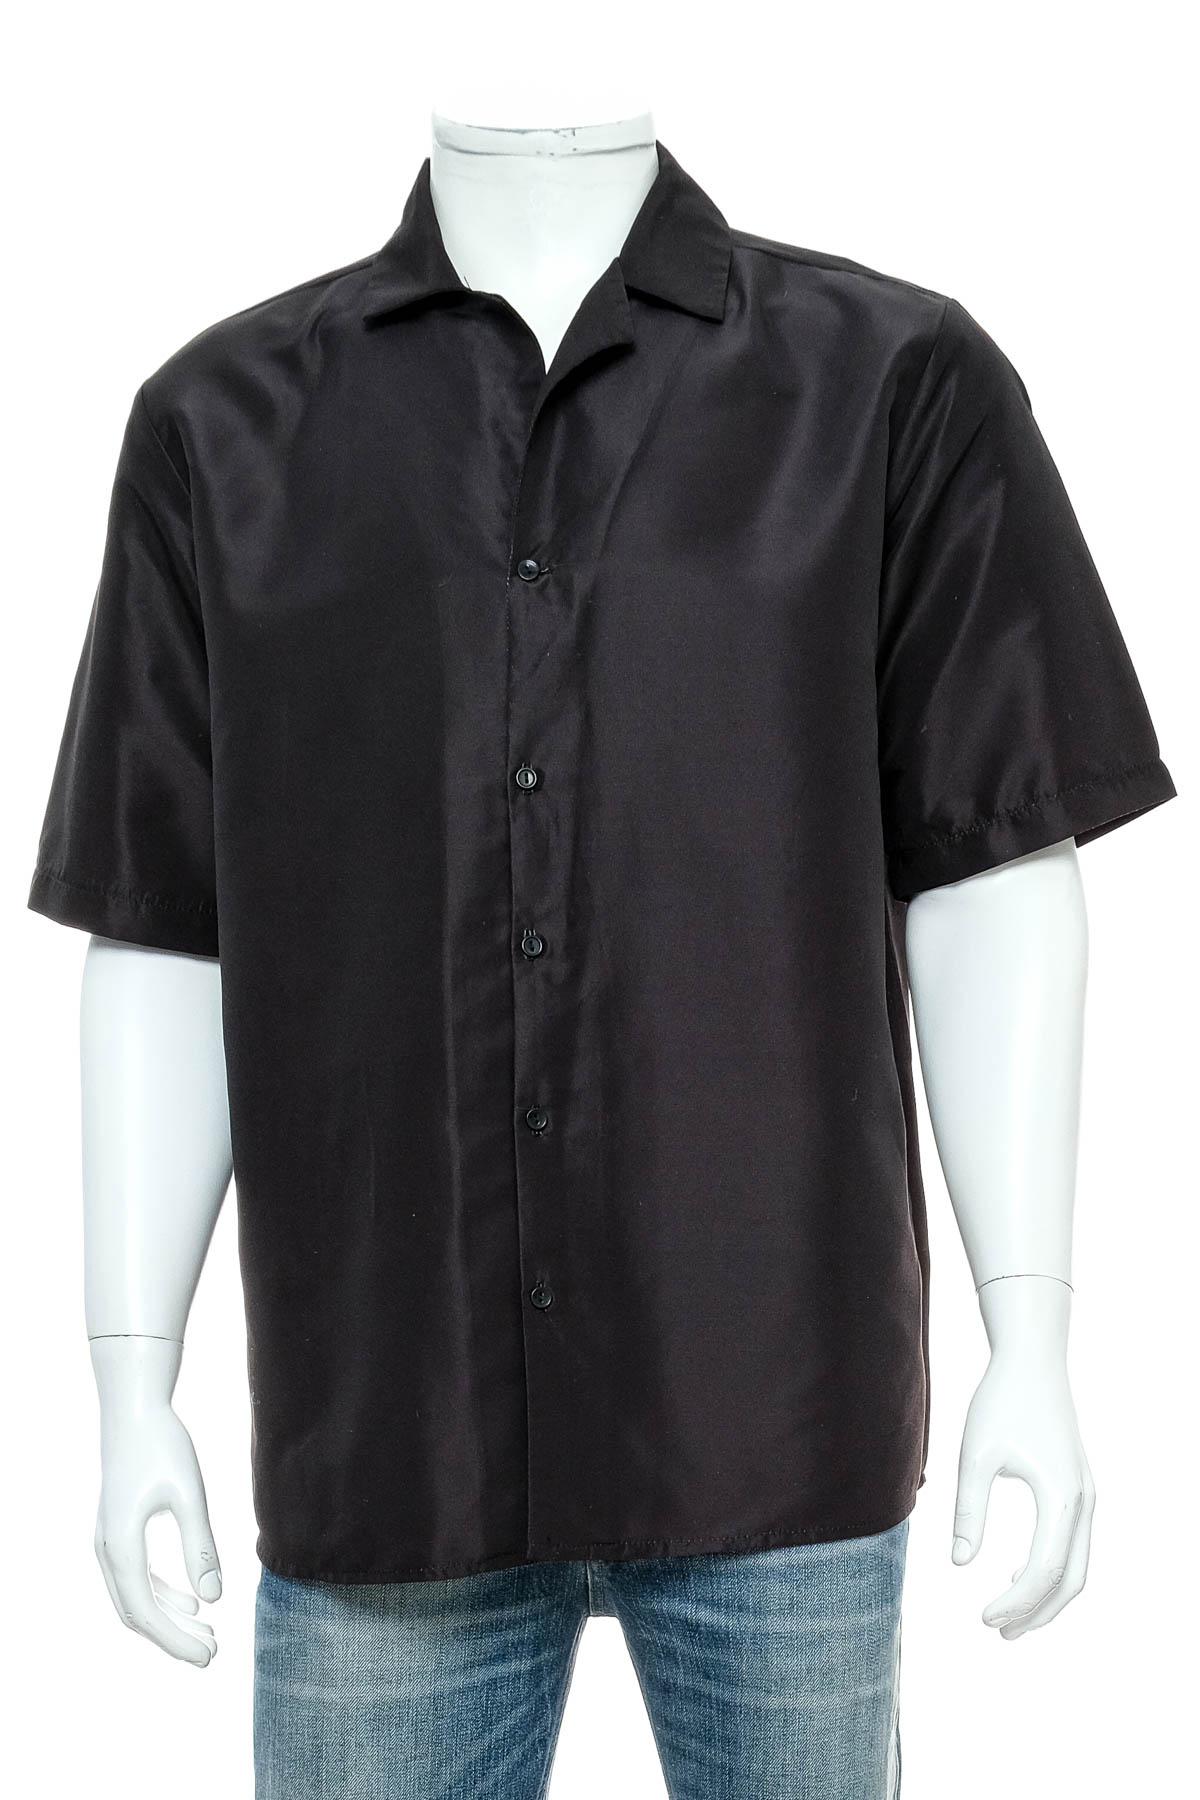 Ανδρικό πουκάμισο - Reclaimed vintage - 0